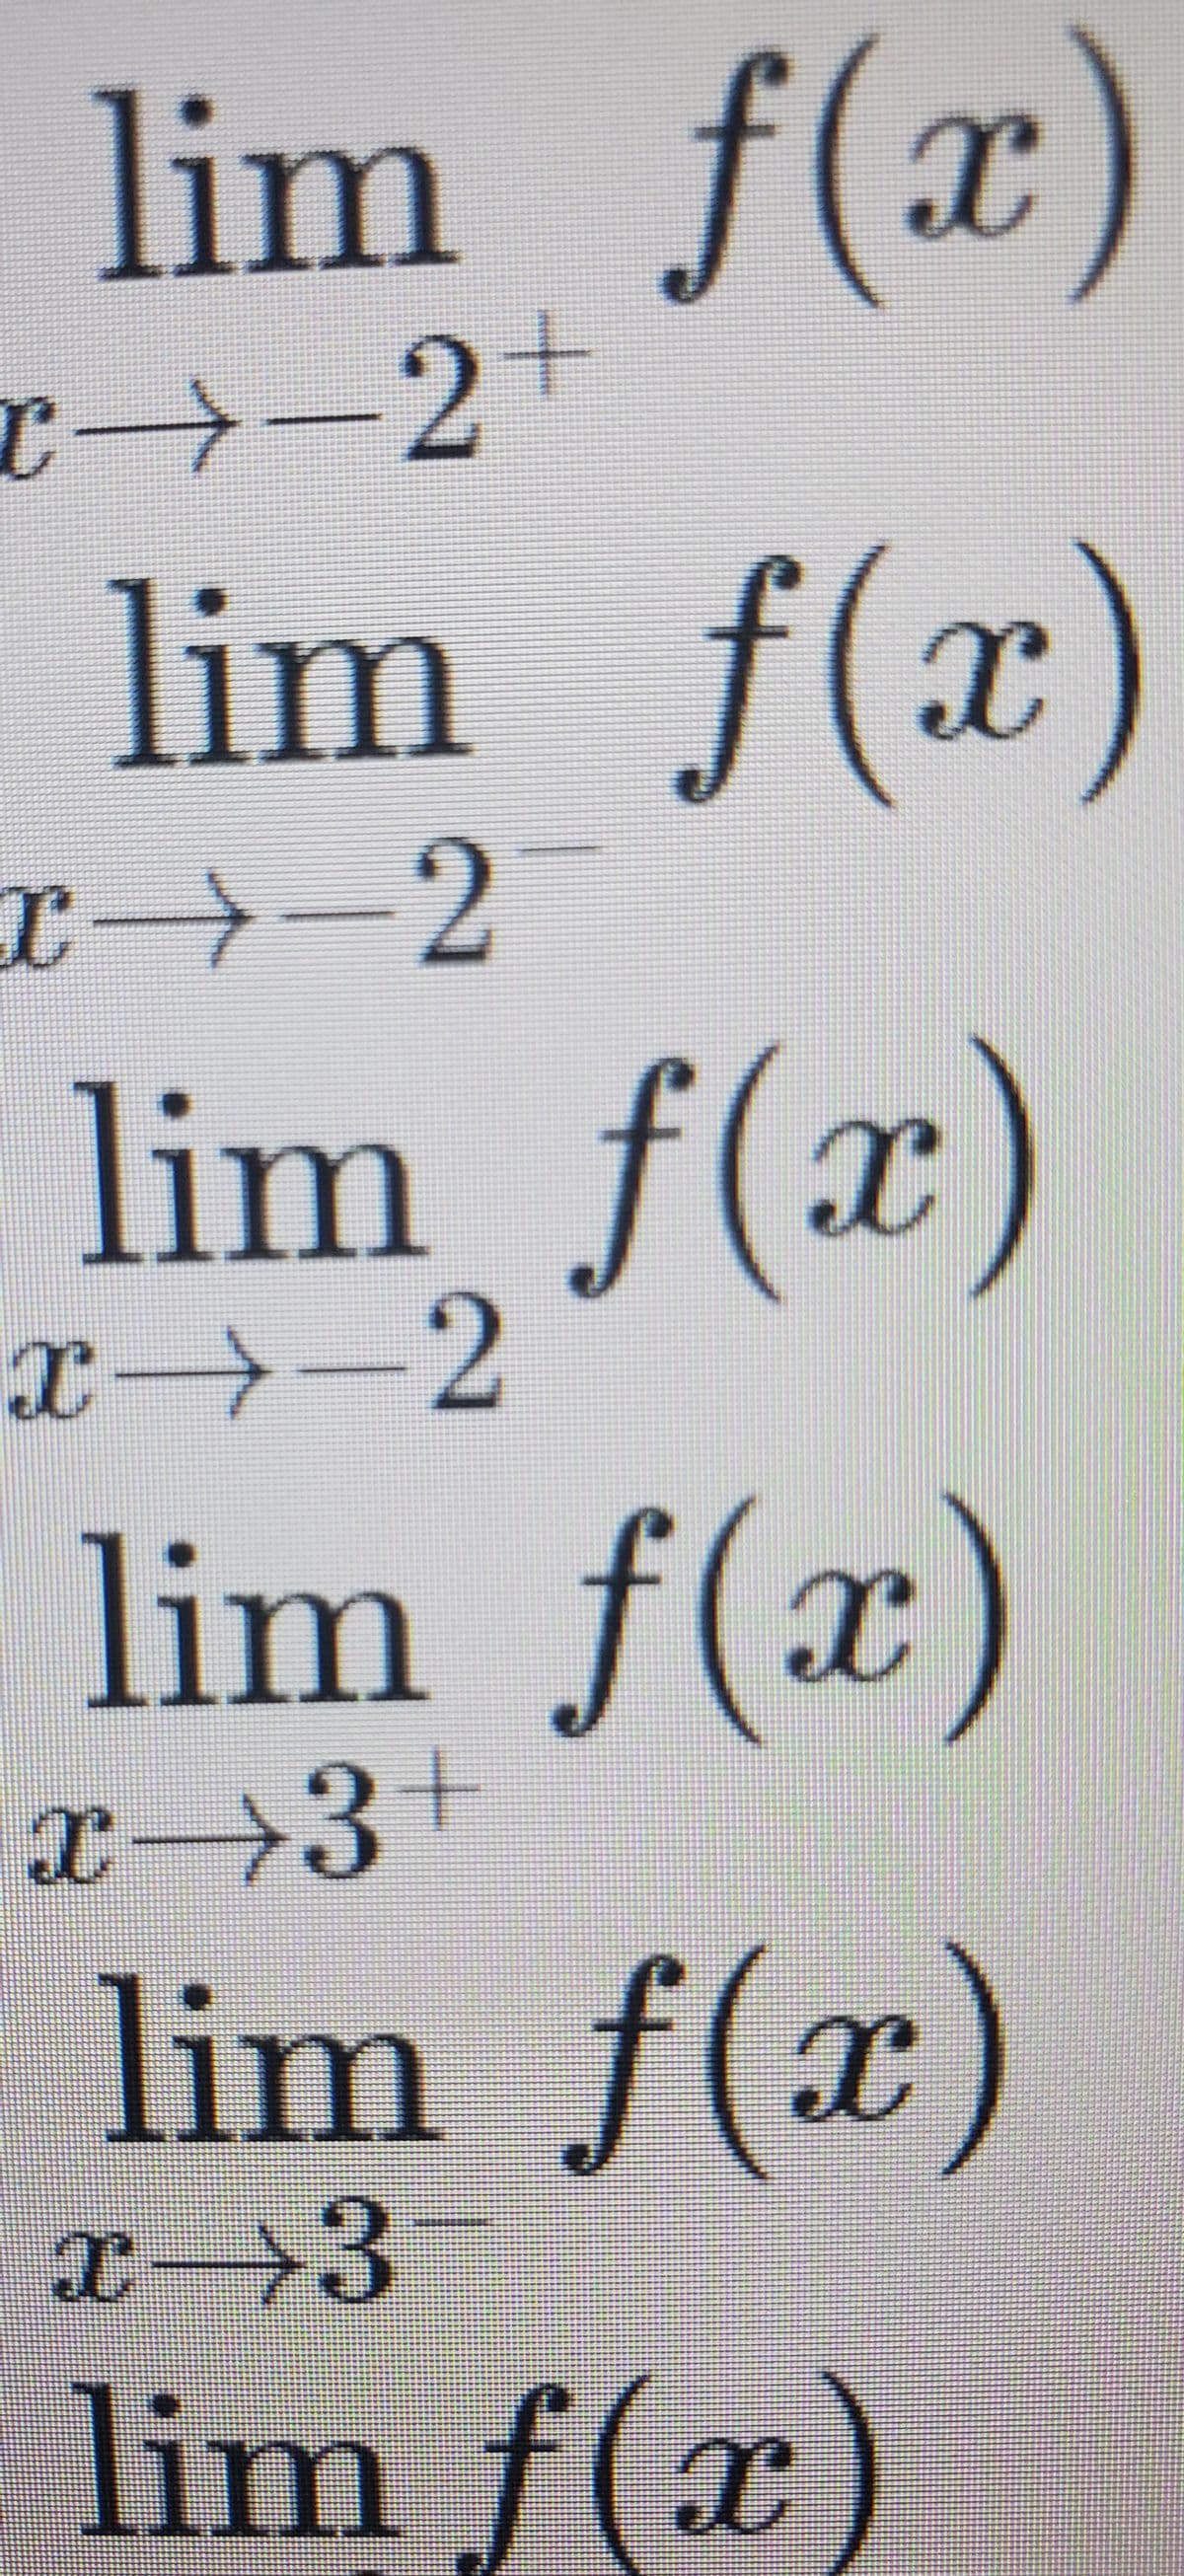 lim f(x)
c→-2+
lim f(x)
2
lim f(x)
x→-2
lim f(x)
x→3+
lim f(x)
x→3-
lim f(x)
